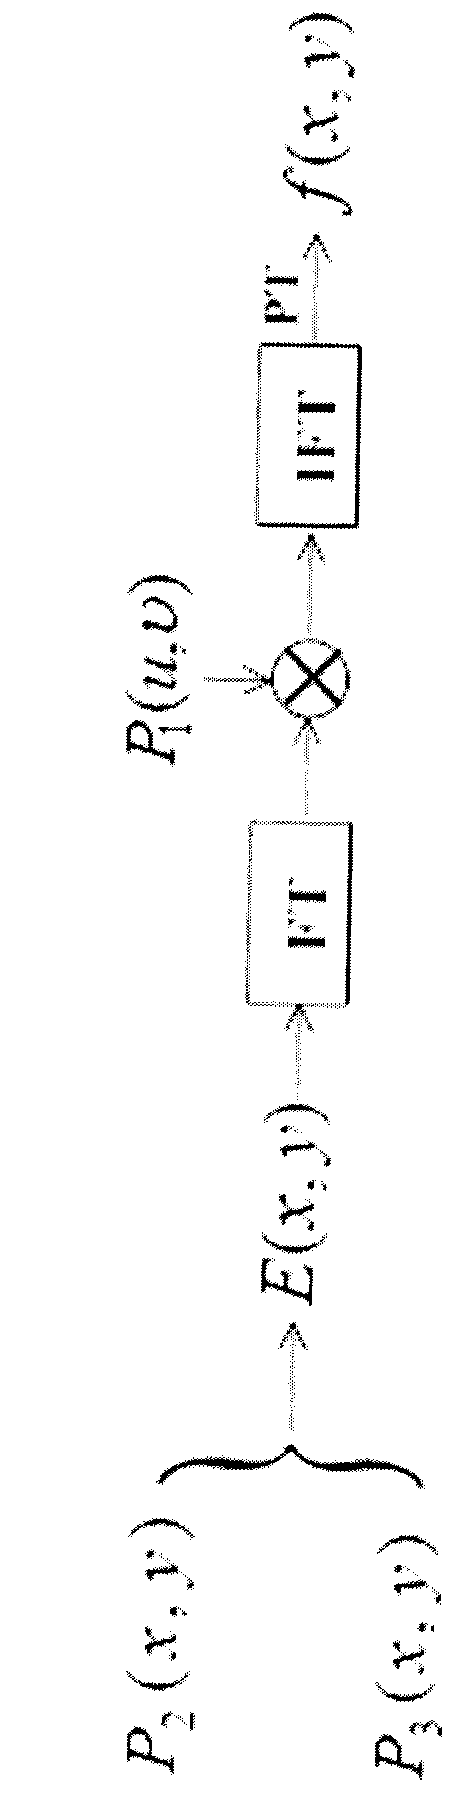 Image encryption method based on double random phase encoding and interference principle